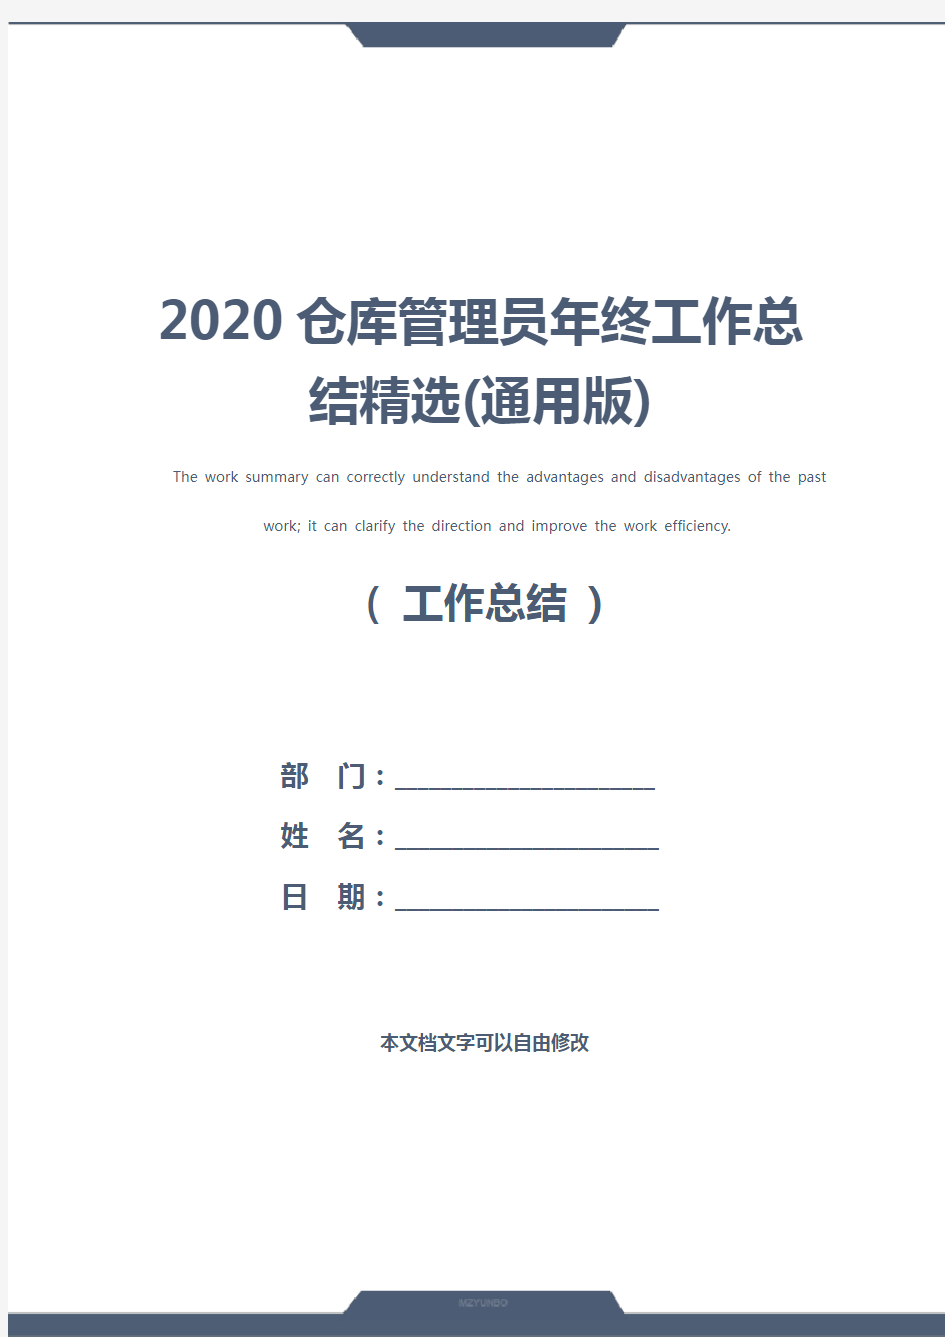 2020仓库管理员年终工作总结精选(通用版)